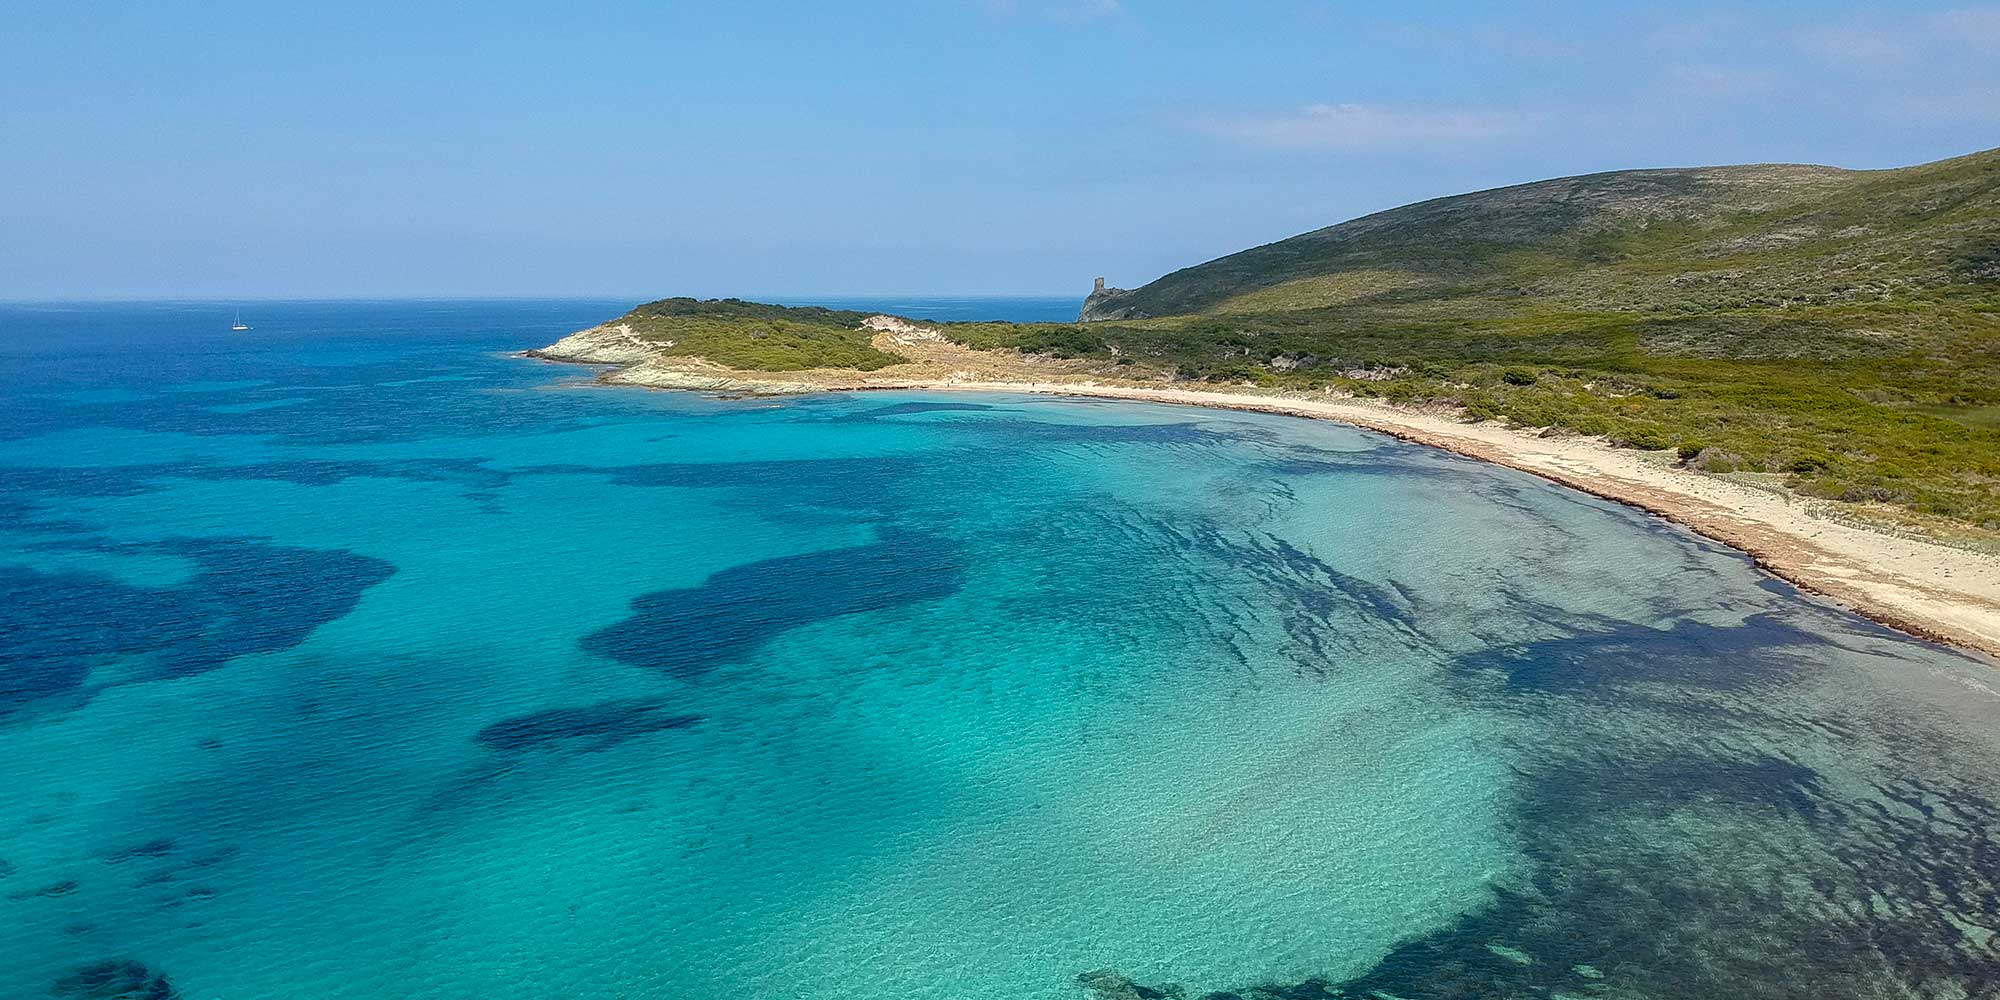 Affitto vacanze Villa vicino spiaggia e mare a Barcaggio / Tollare per 12 a 13 persone a Cap Corse